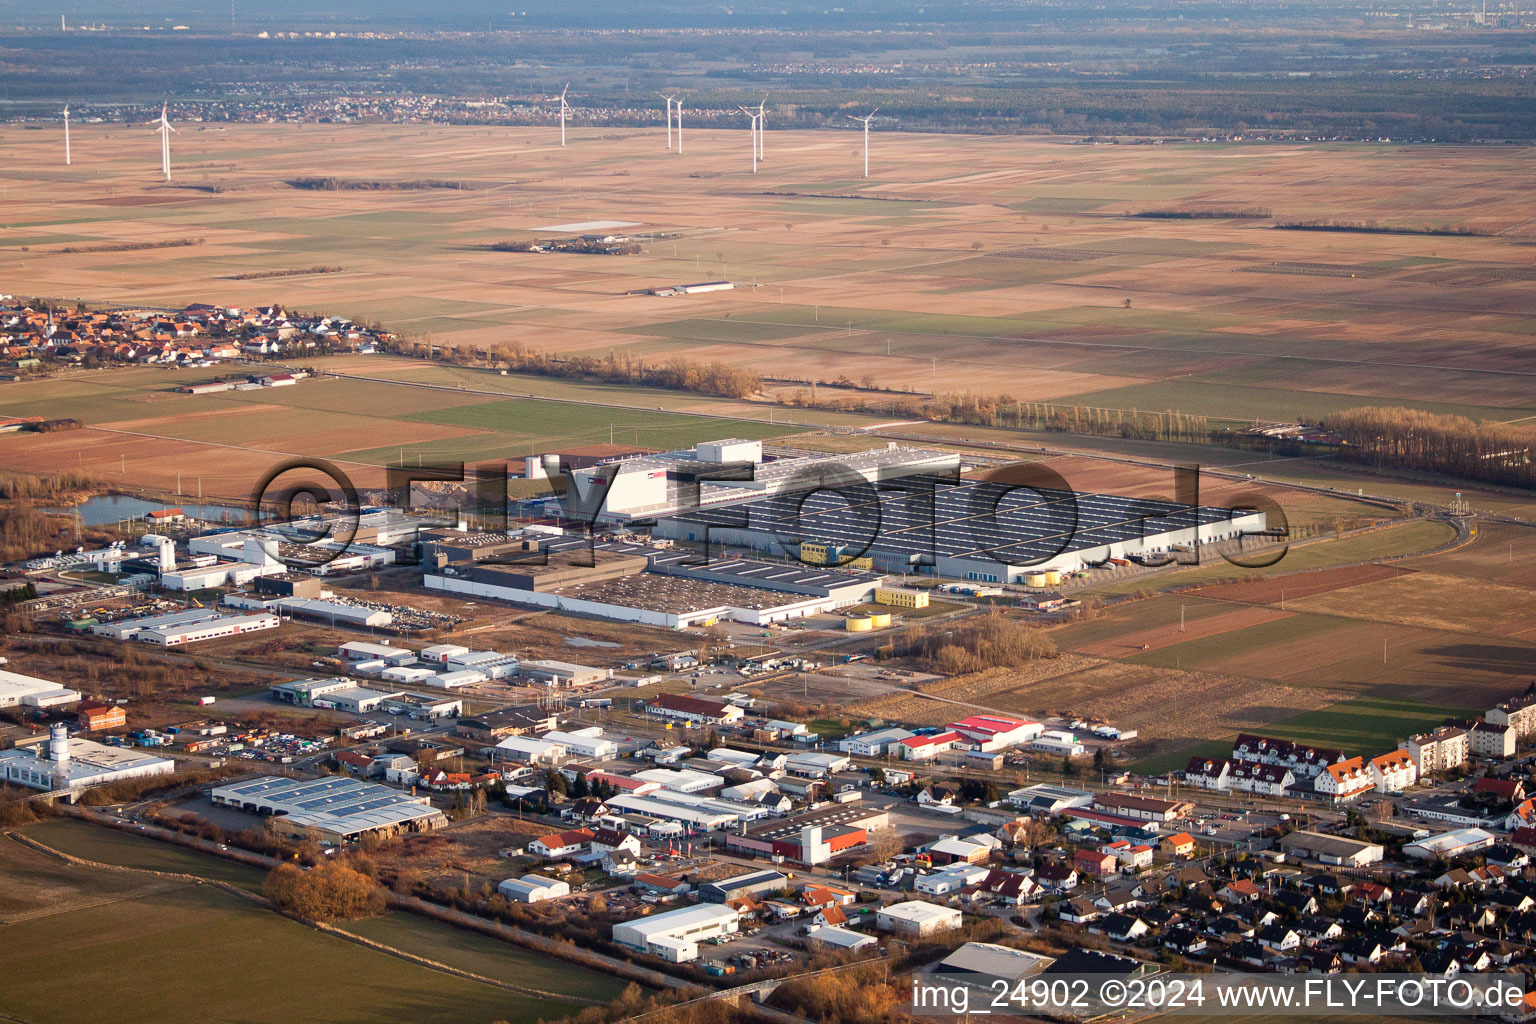 Vue aérienne de Zone commerciale O à Offenbach an der Queich dans le département Rhénanie-Palatinat, Allemagne